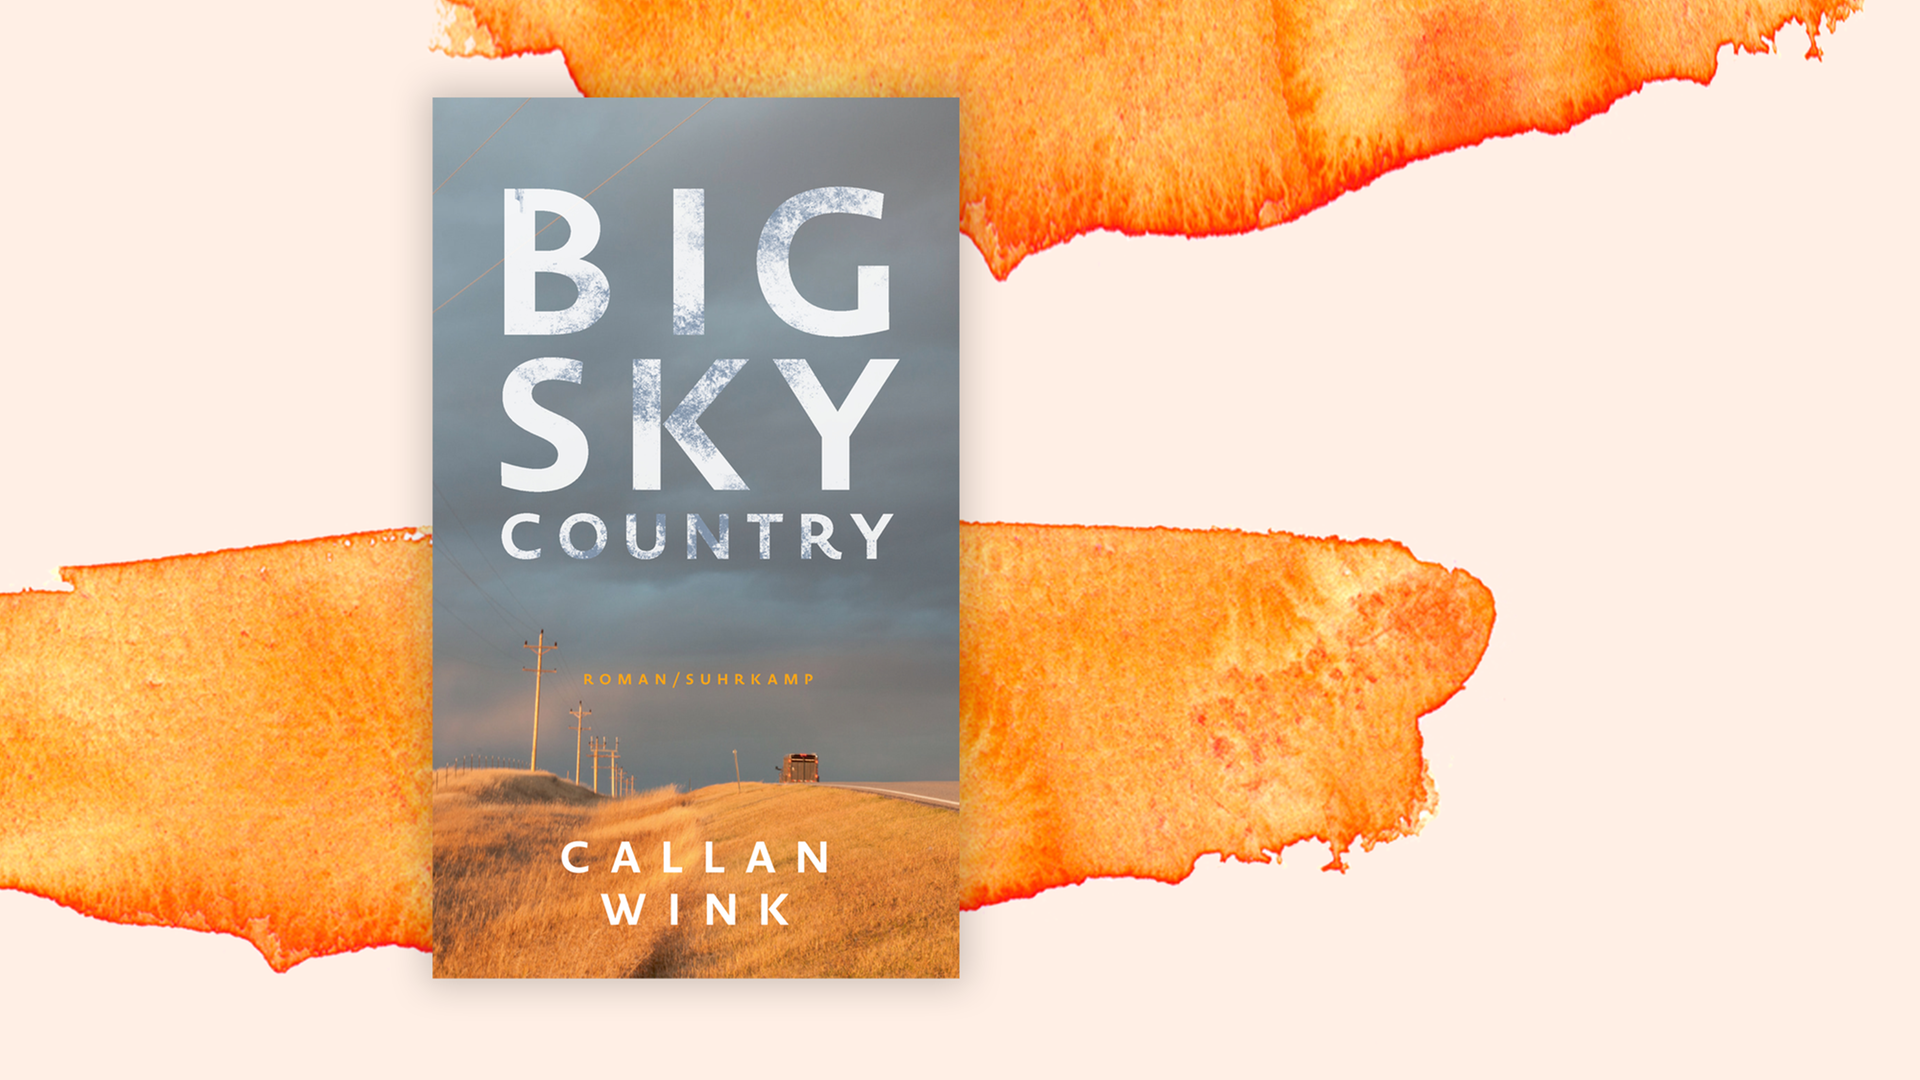 Zu sehen ist das Cover des Buches "Big Sky Country" von Callan Wink.